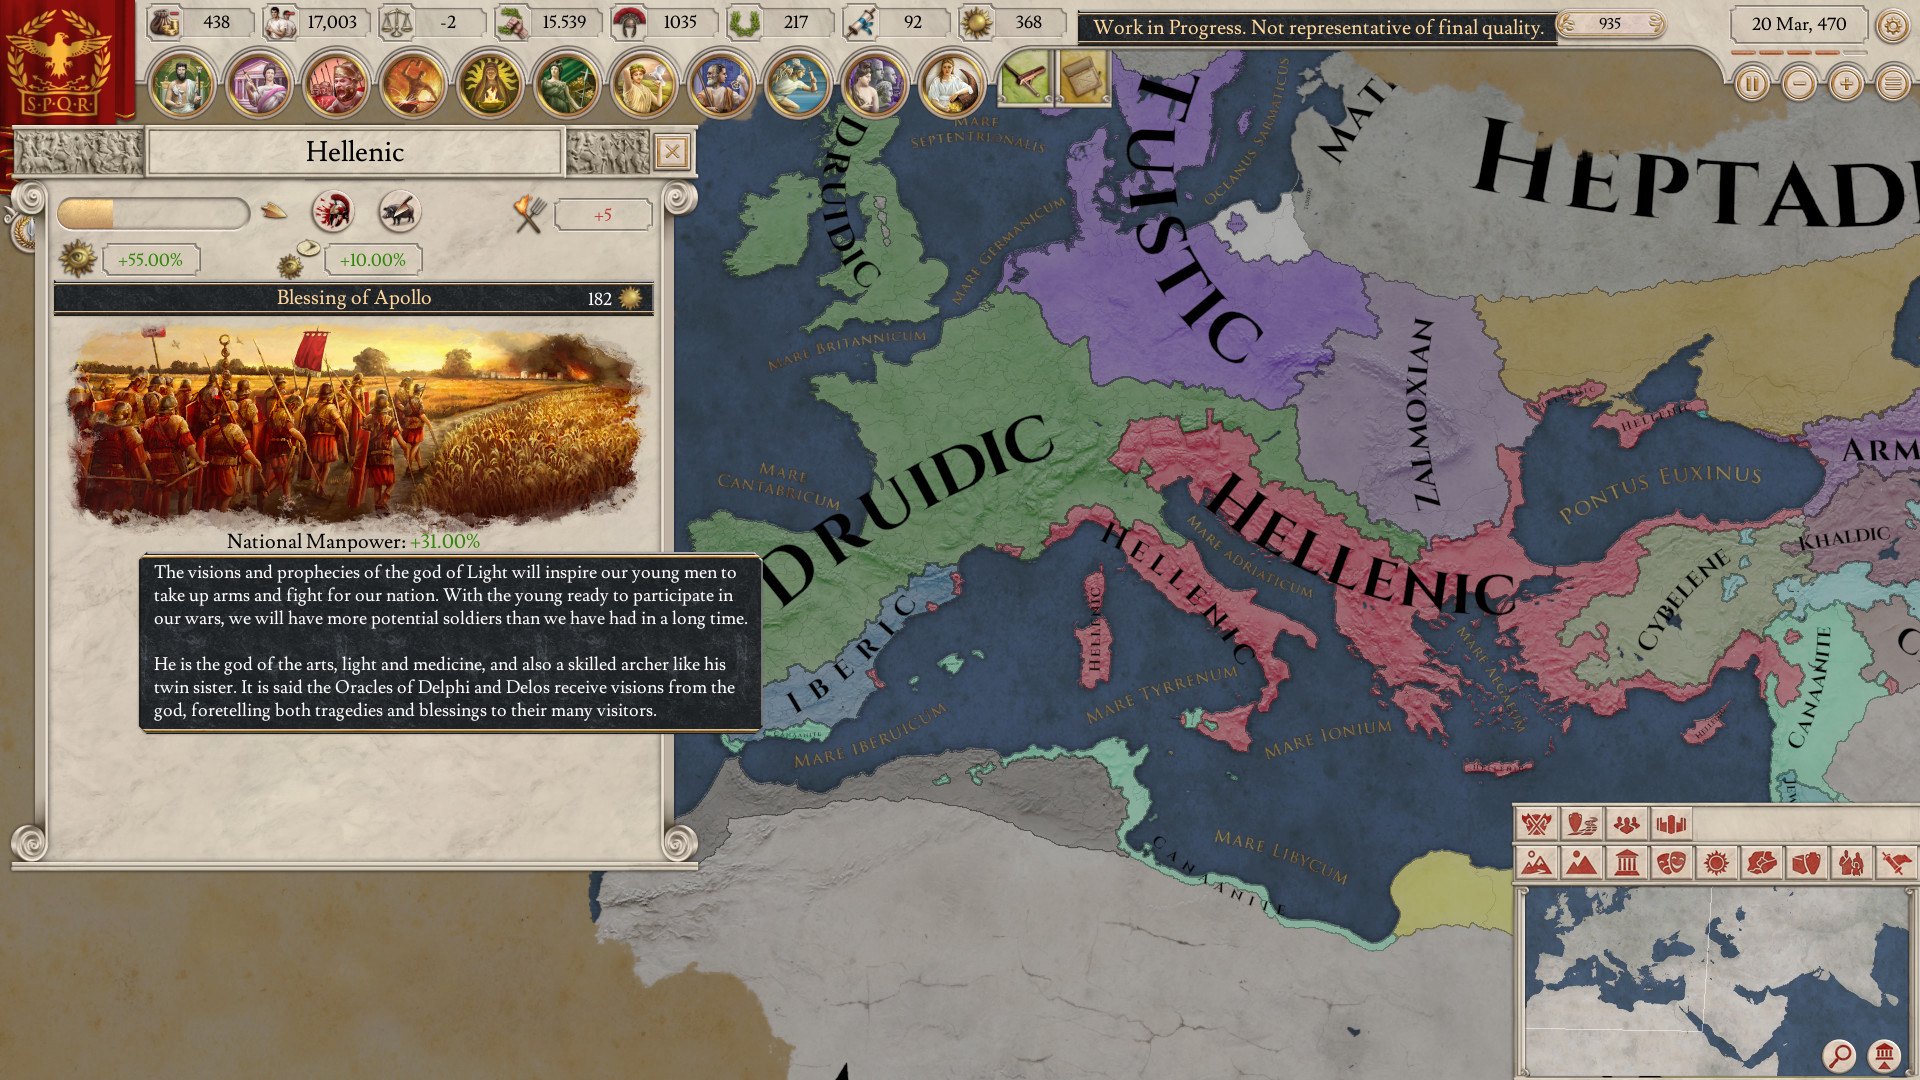 Imperator: Rome EU Steam CD Key